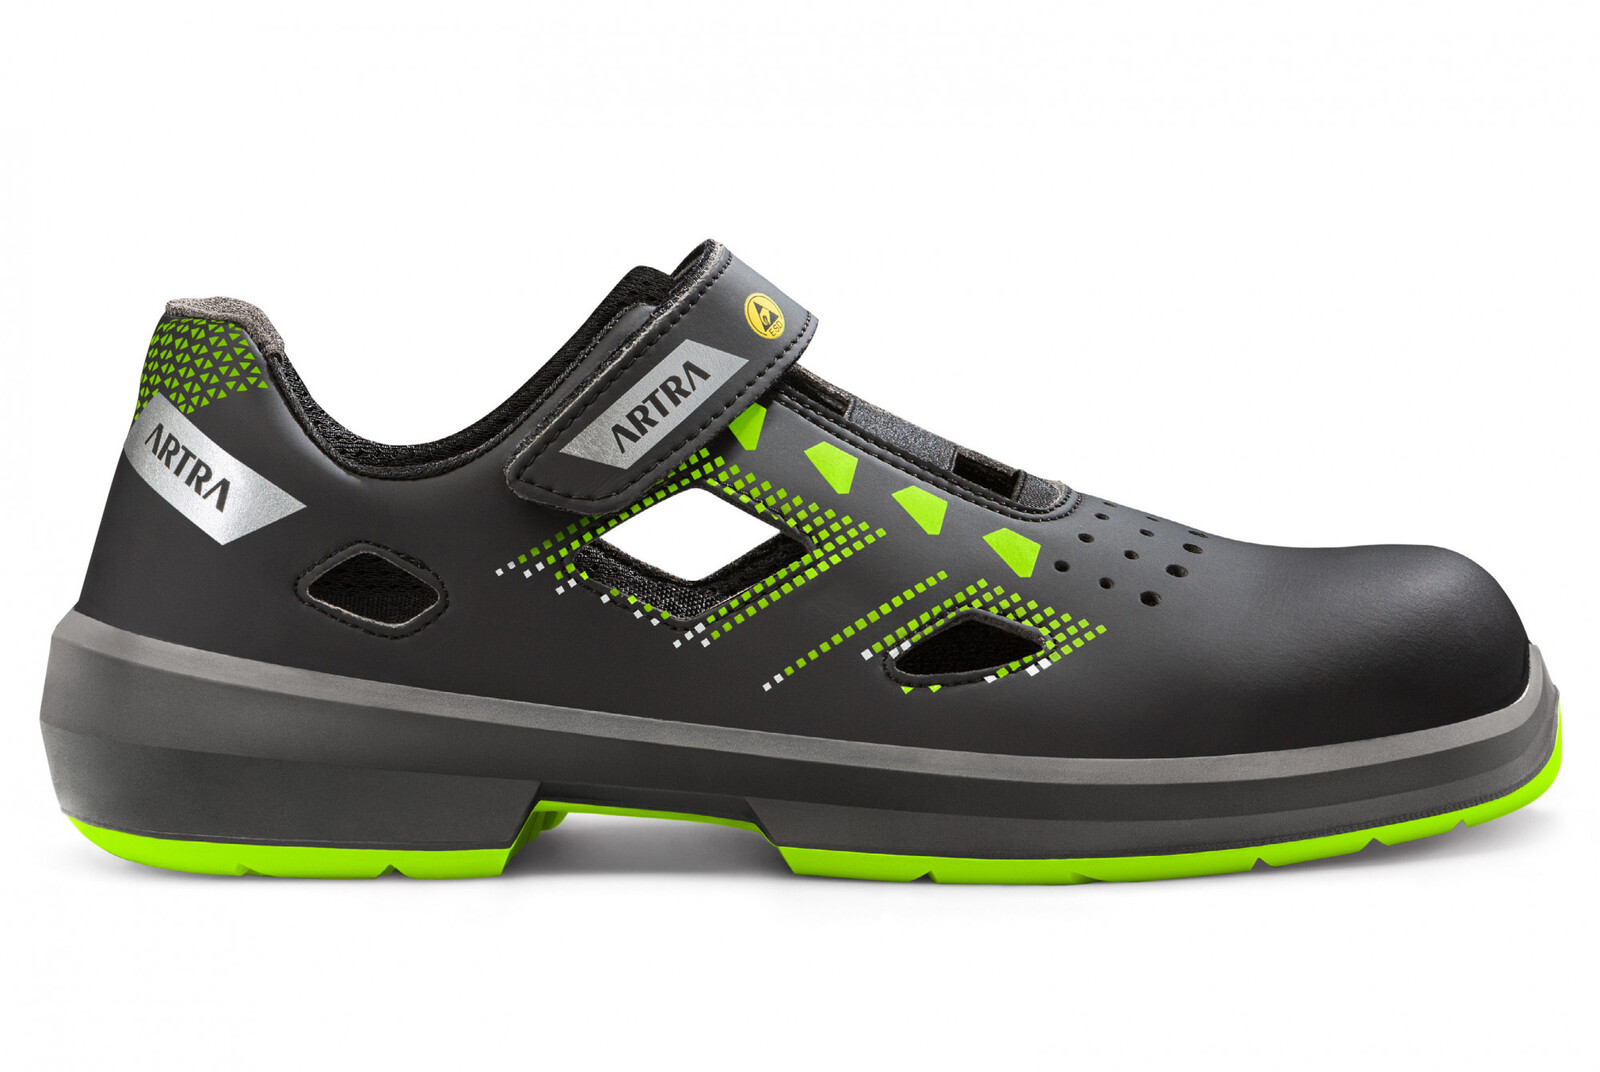 Bezpečnostné sandále Artra Arzo 805 678080 S1P SRC ESD MF - veľkosť: 37, farba: čierna/zelená